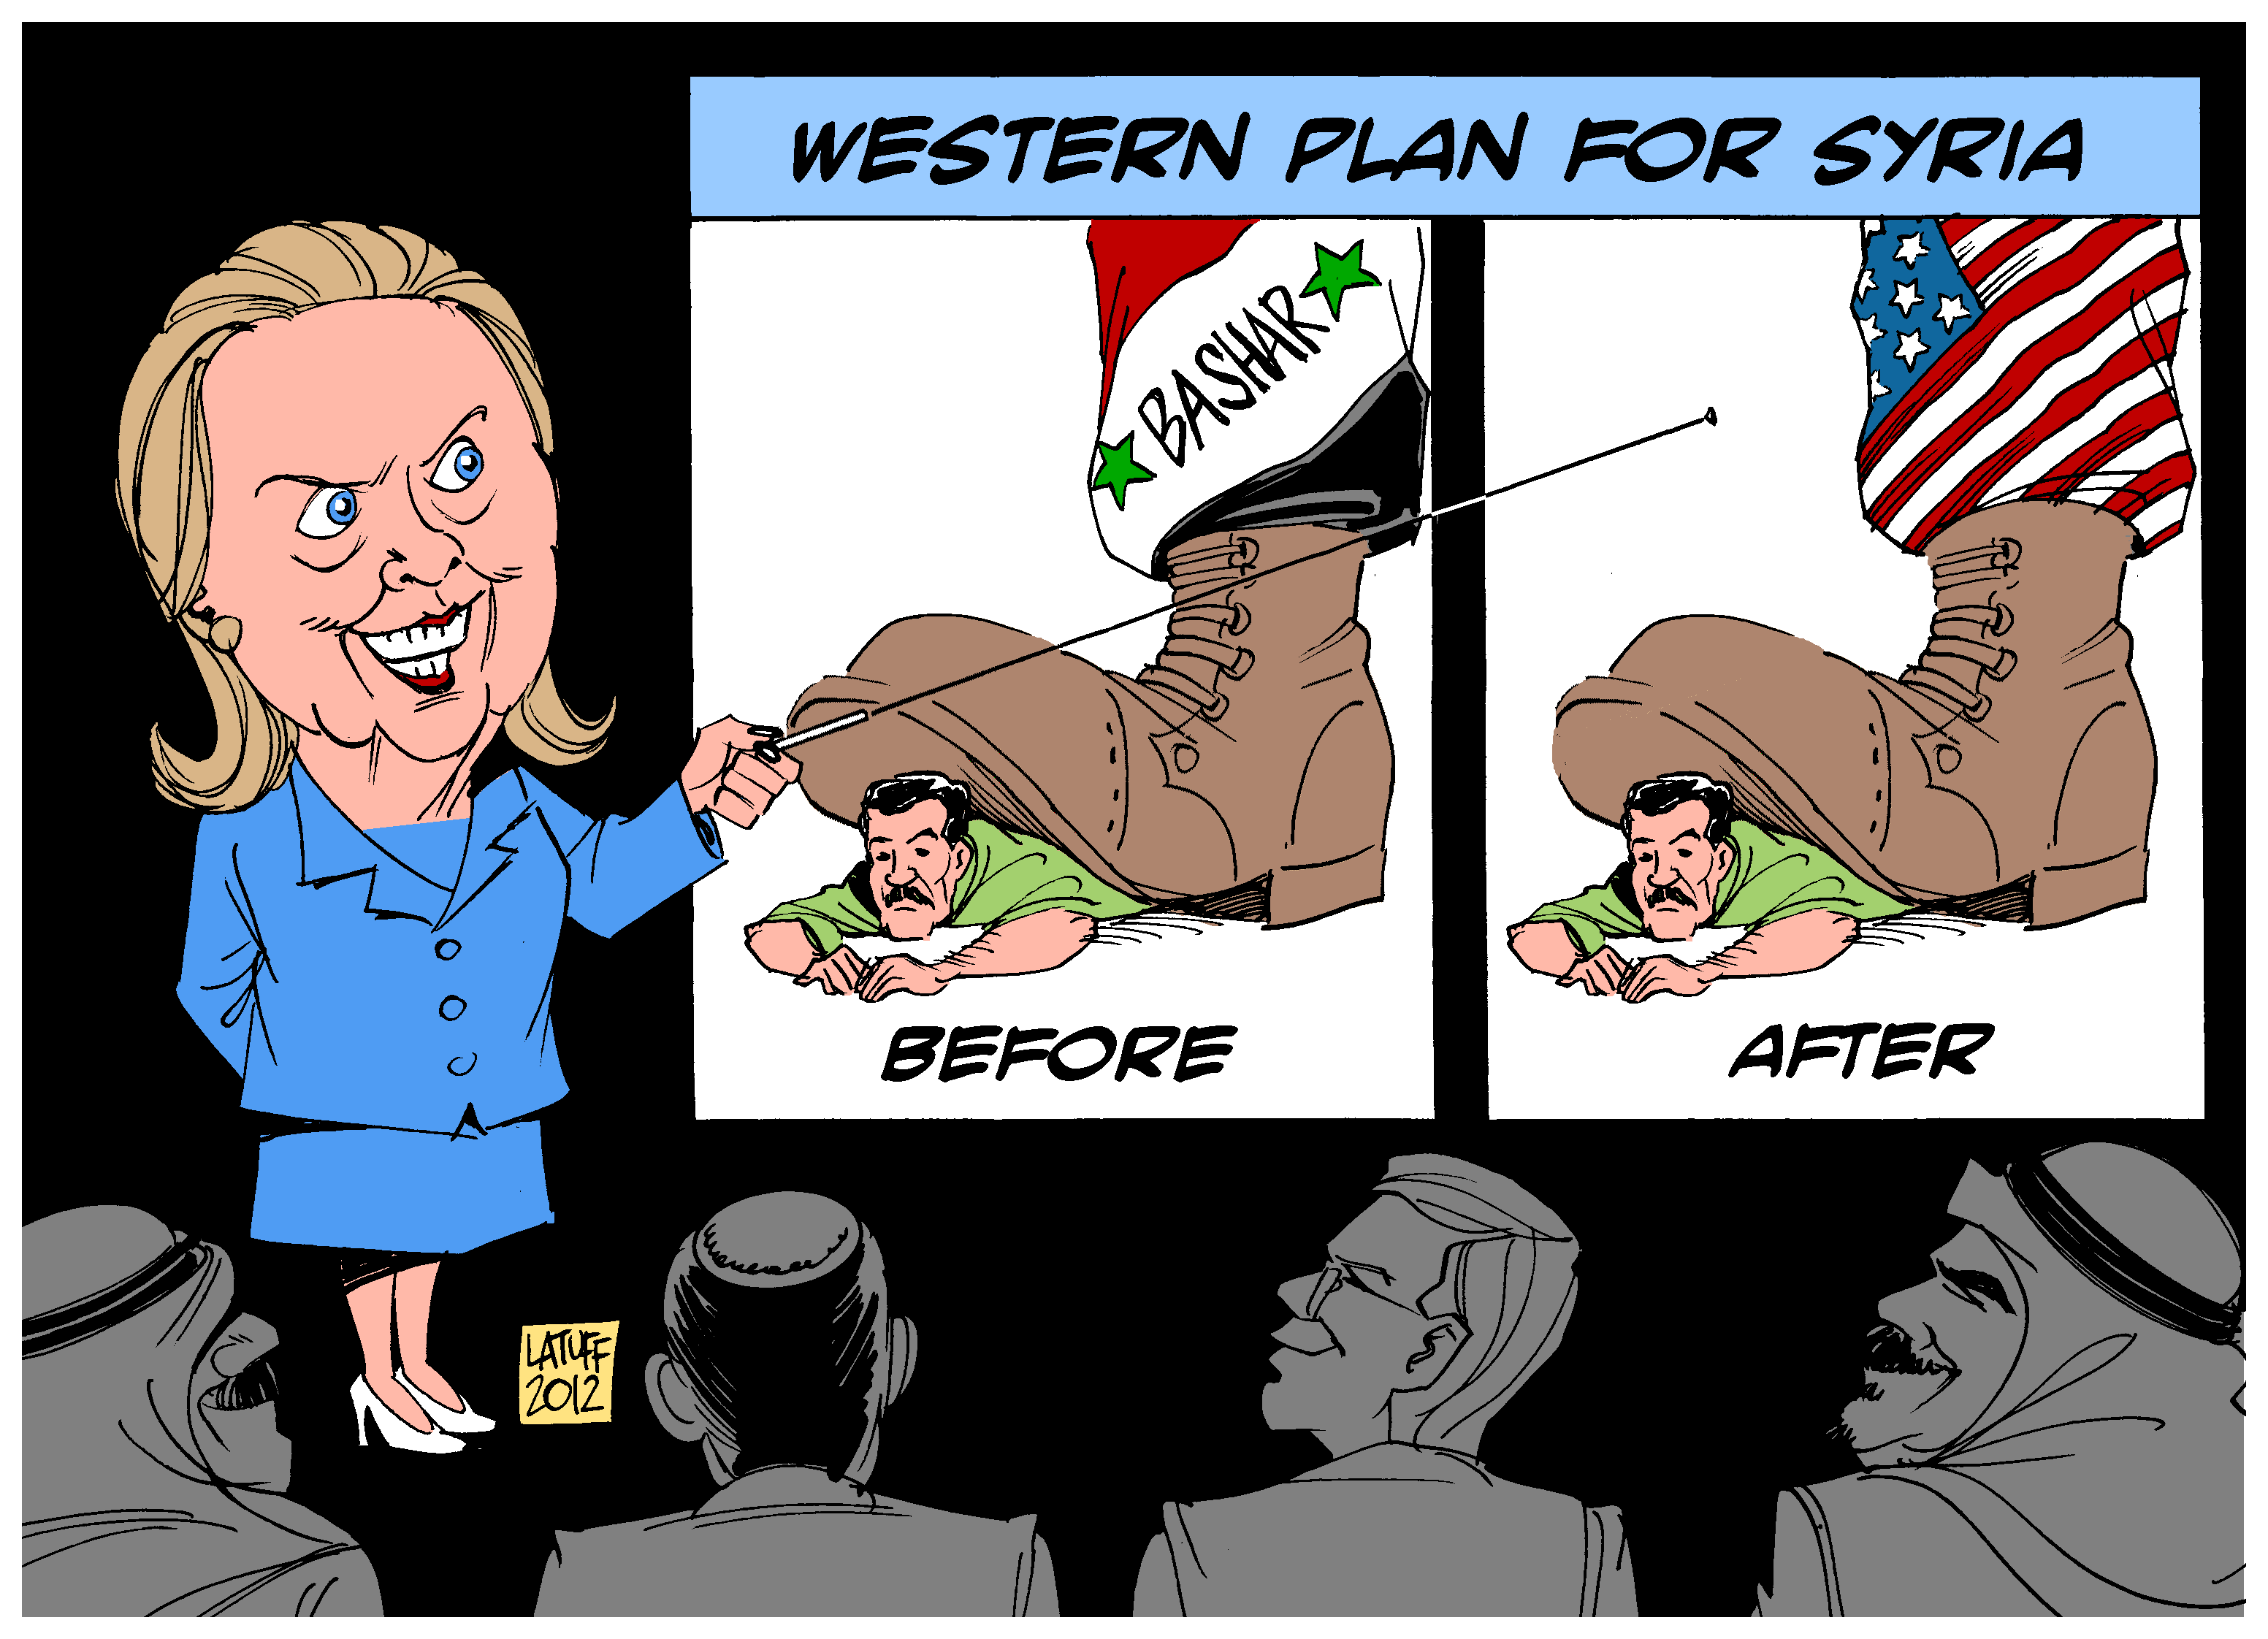 Plano Ocidental para a Síria (caricatura)